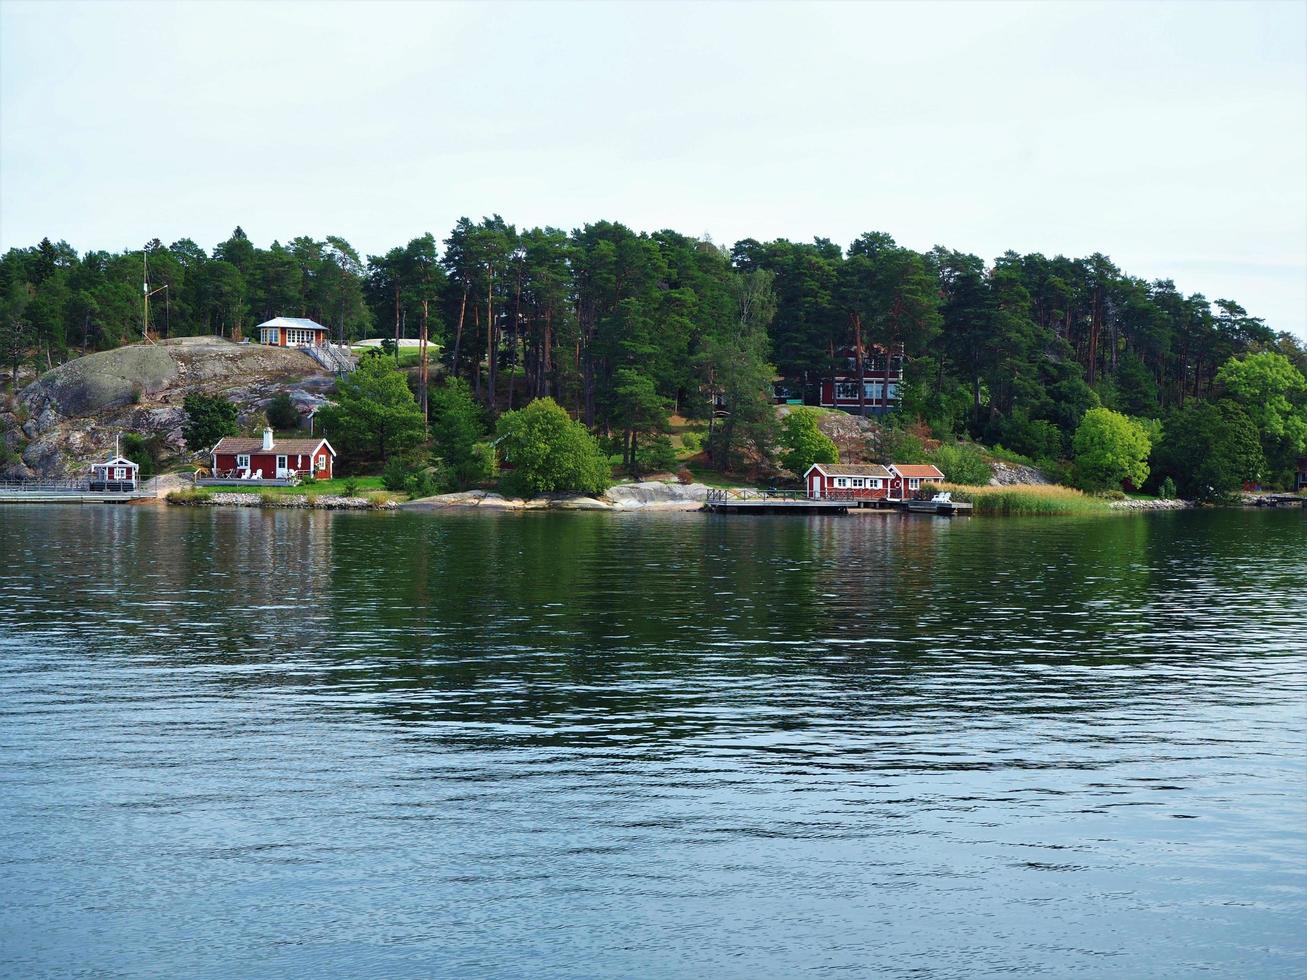 île boisée de l'archipel de Stockholm en Suède avec une côte rocheuse et des résidences d'été photo